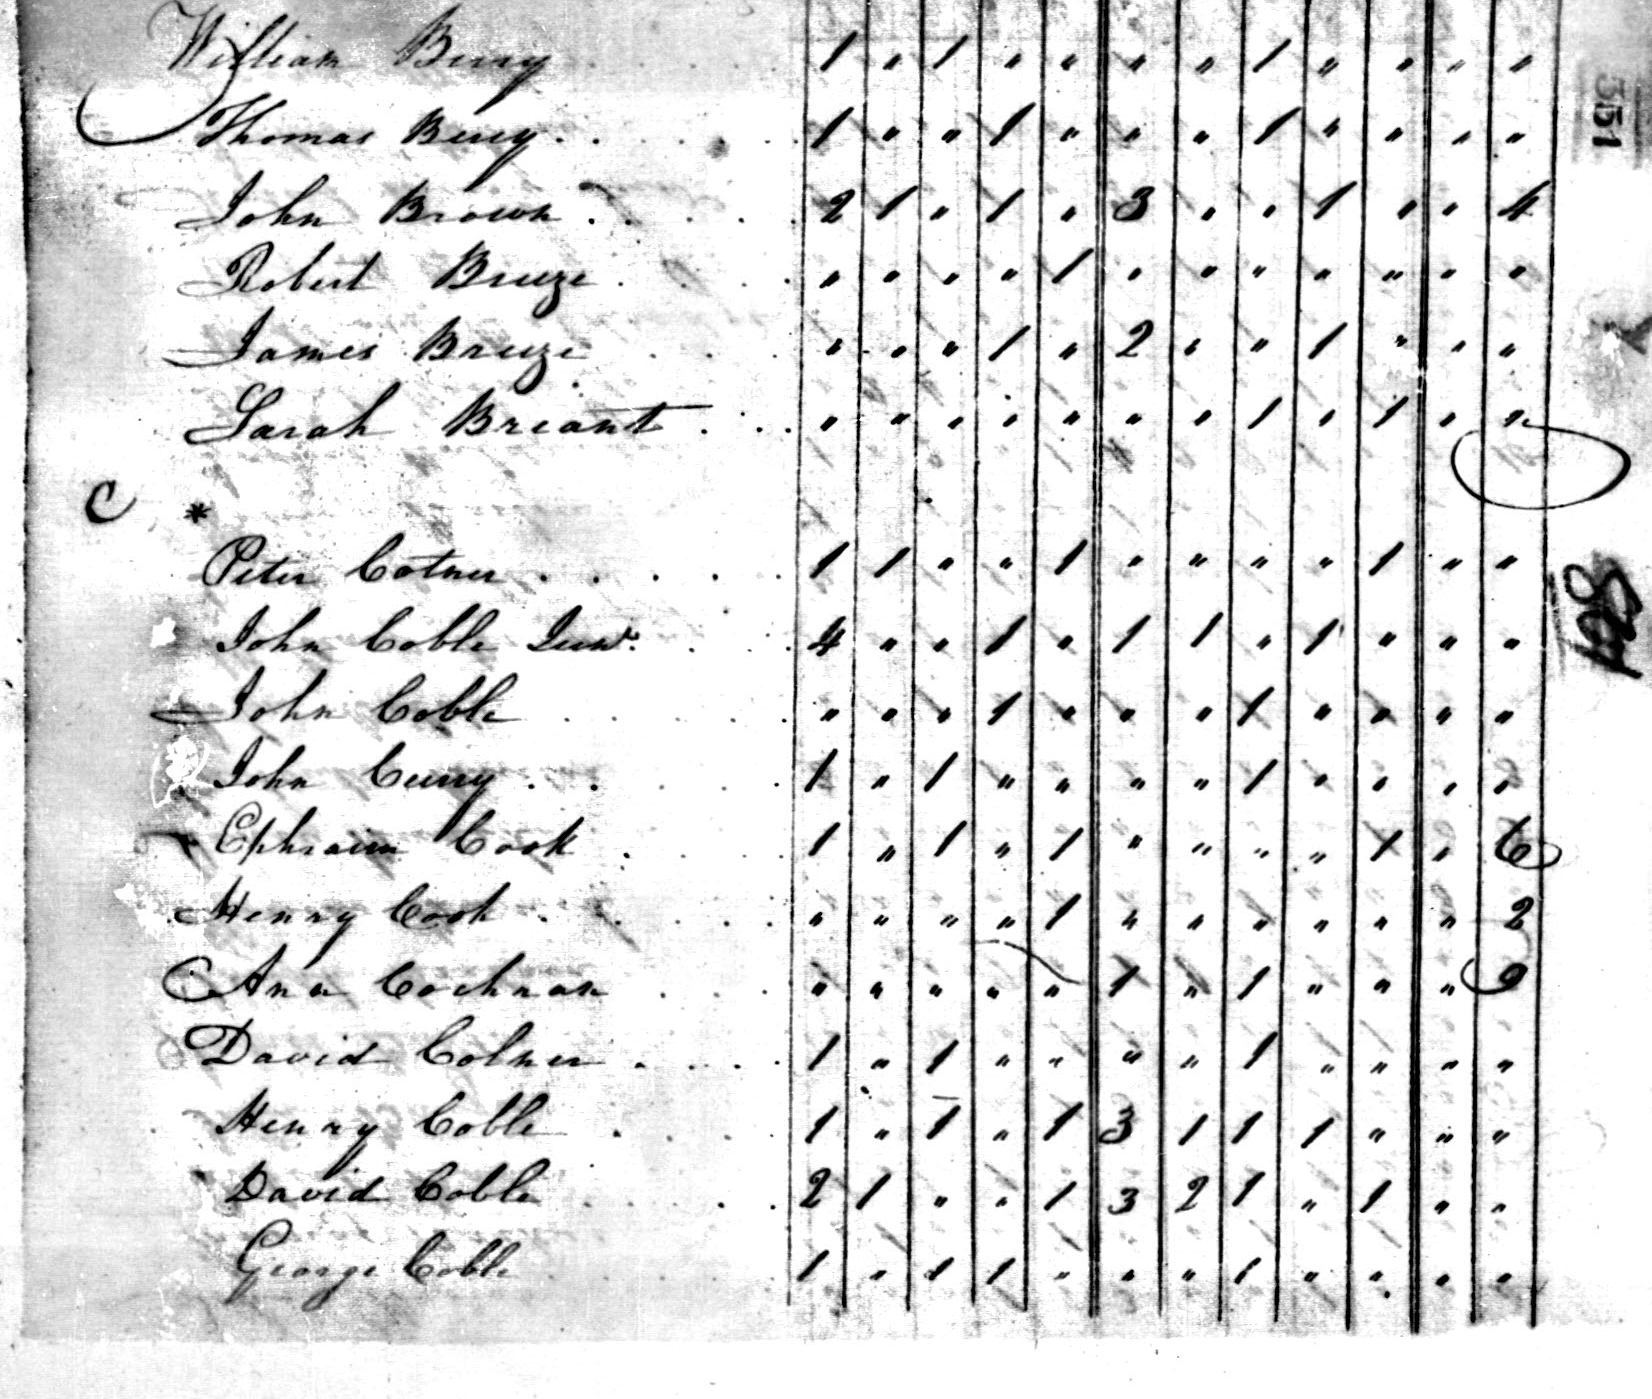 William Berry 1800 Orange NC Census